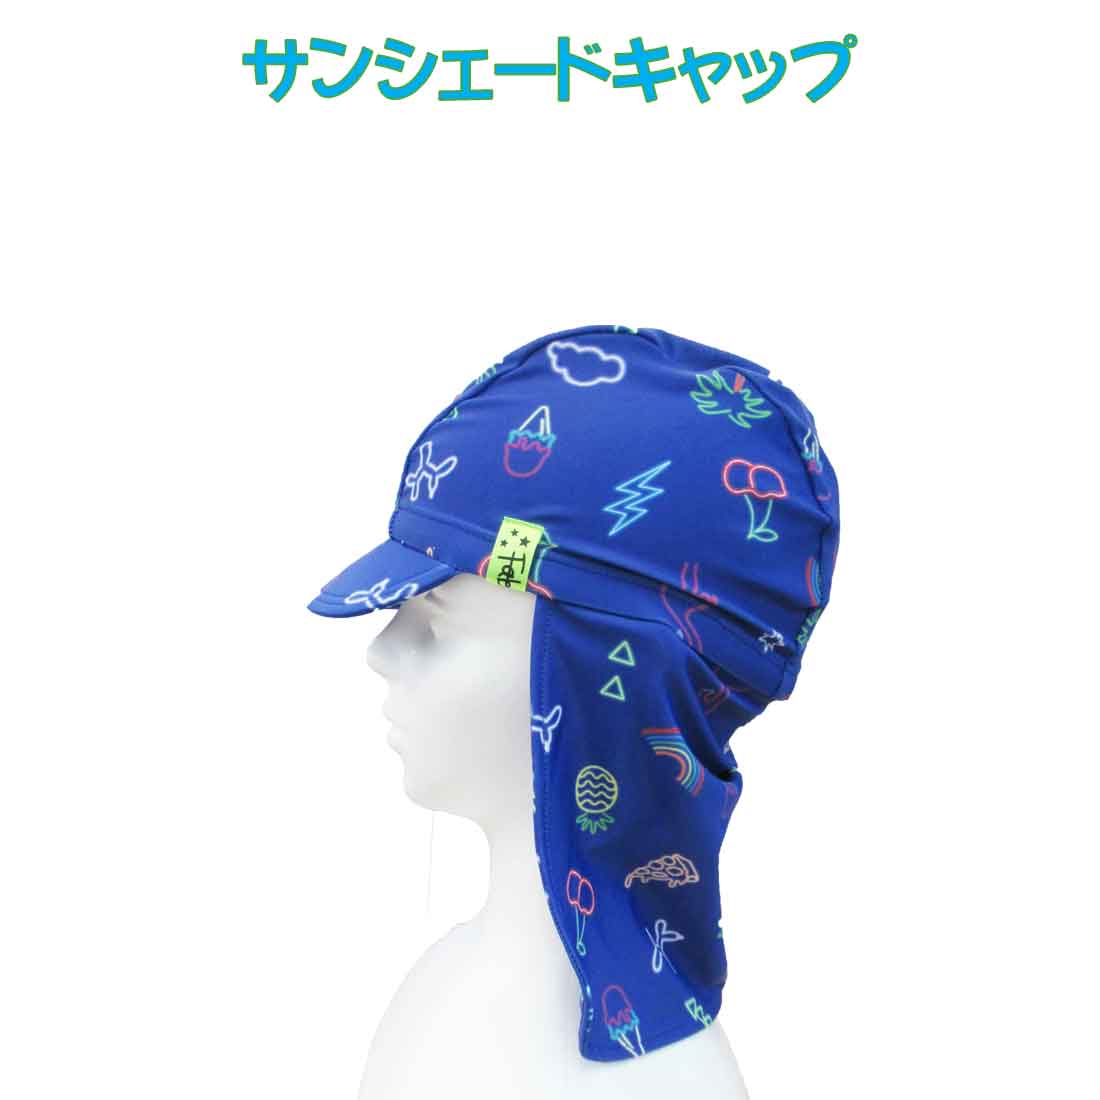 サンシェードキャップ　日よけスイムキャップ　M(52〜56cm対応)キッズ（ネオンパーティ柄） 男の子 夏休み 海 プール 子供 帽子